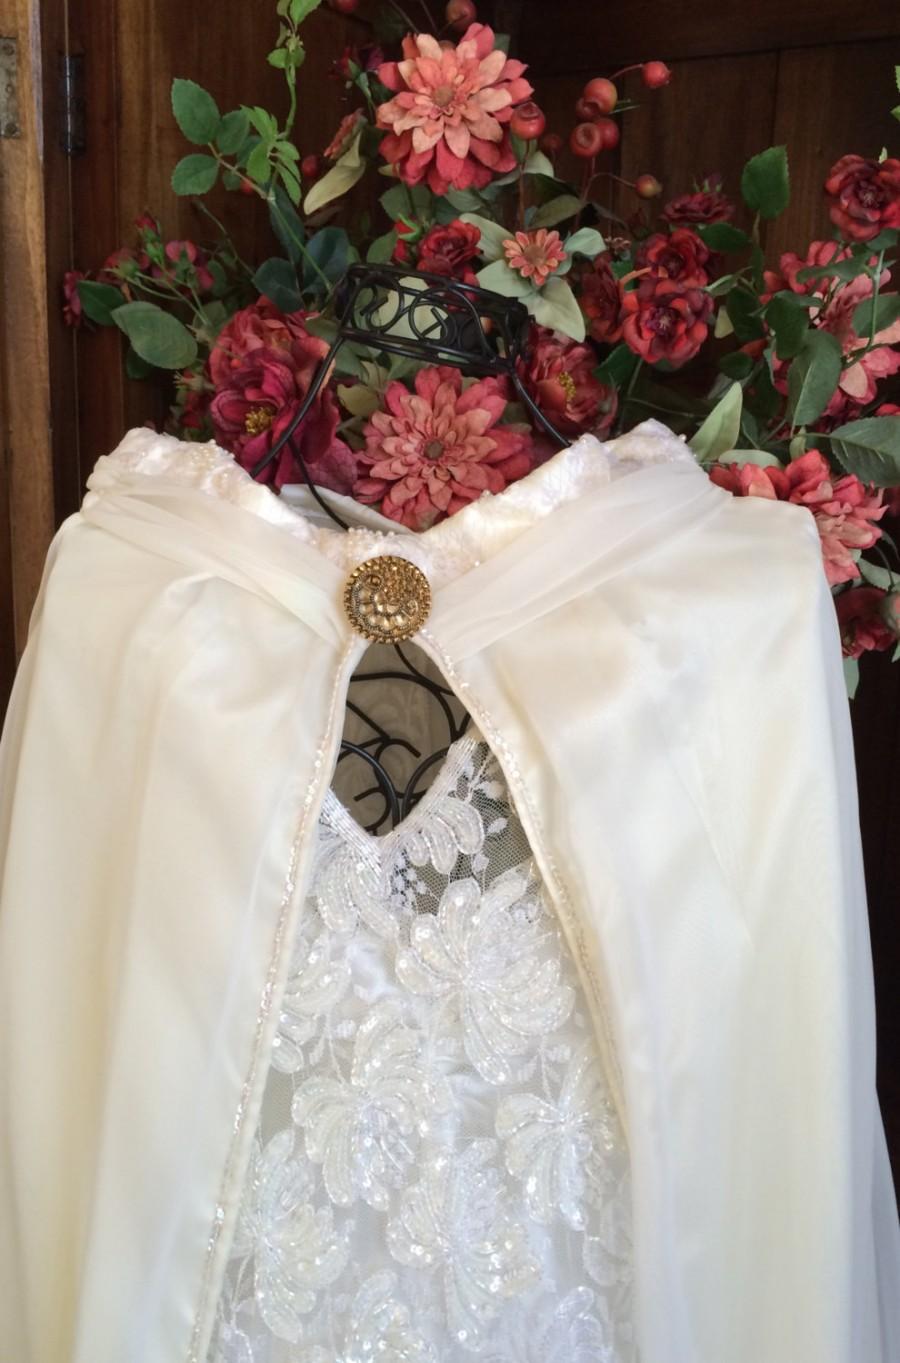 زفاف - Small Bridal Cape, Bride Cloak, Bridal Dress Cover, Bride Shawl, Wedding Wear, Cape, Evening Cape, Bridal Cover Up, Up cycled Vintage Dress